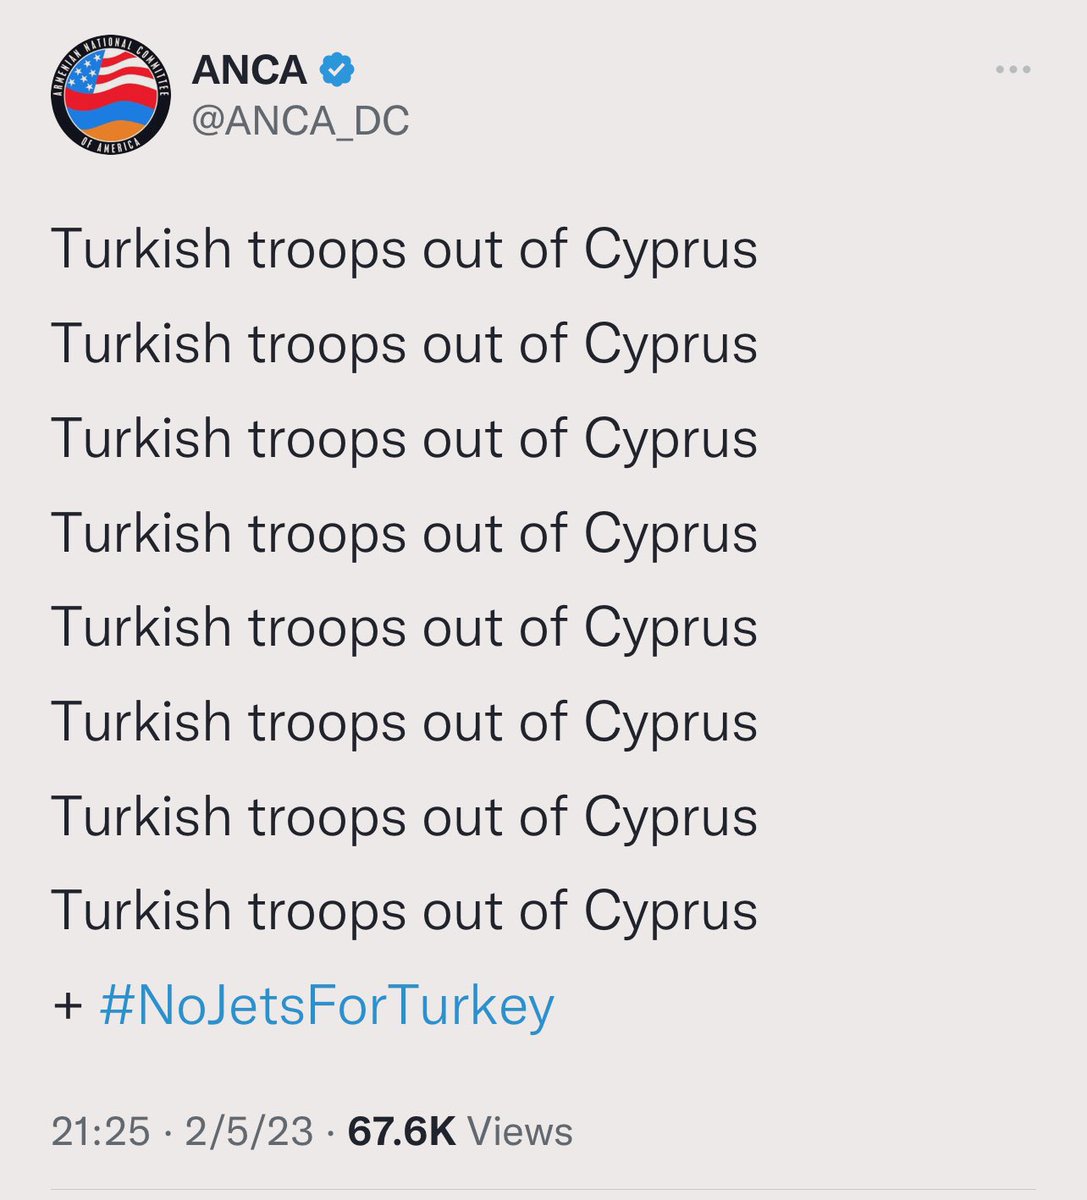 Neden mi çenenizi kapatıp birlik olmak zorundasınız? Buyrun. Türkiye’de binden fazla kişi hayatını kaybetti. Binlerce yaralı var. Amerika’daki Ermeni lobisi “Türk askeri Kıbrıs’tan çekildi” diye tweet atıyor. Beyler, başka Türkiye yok. #Deprem